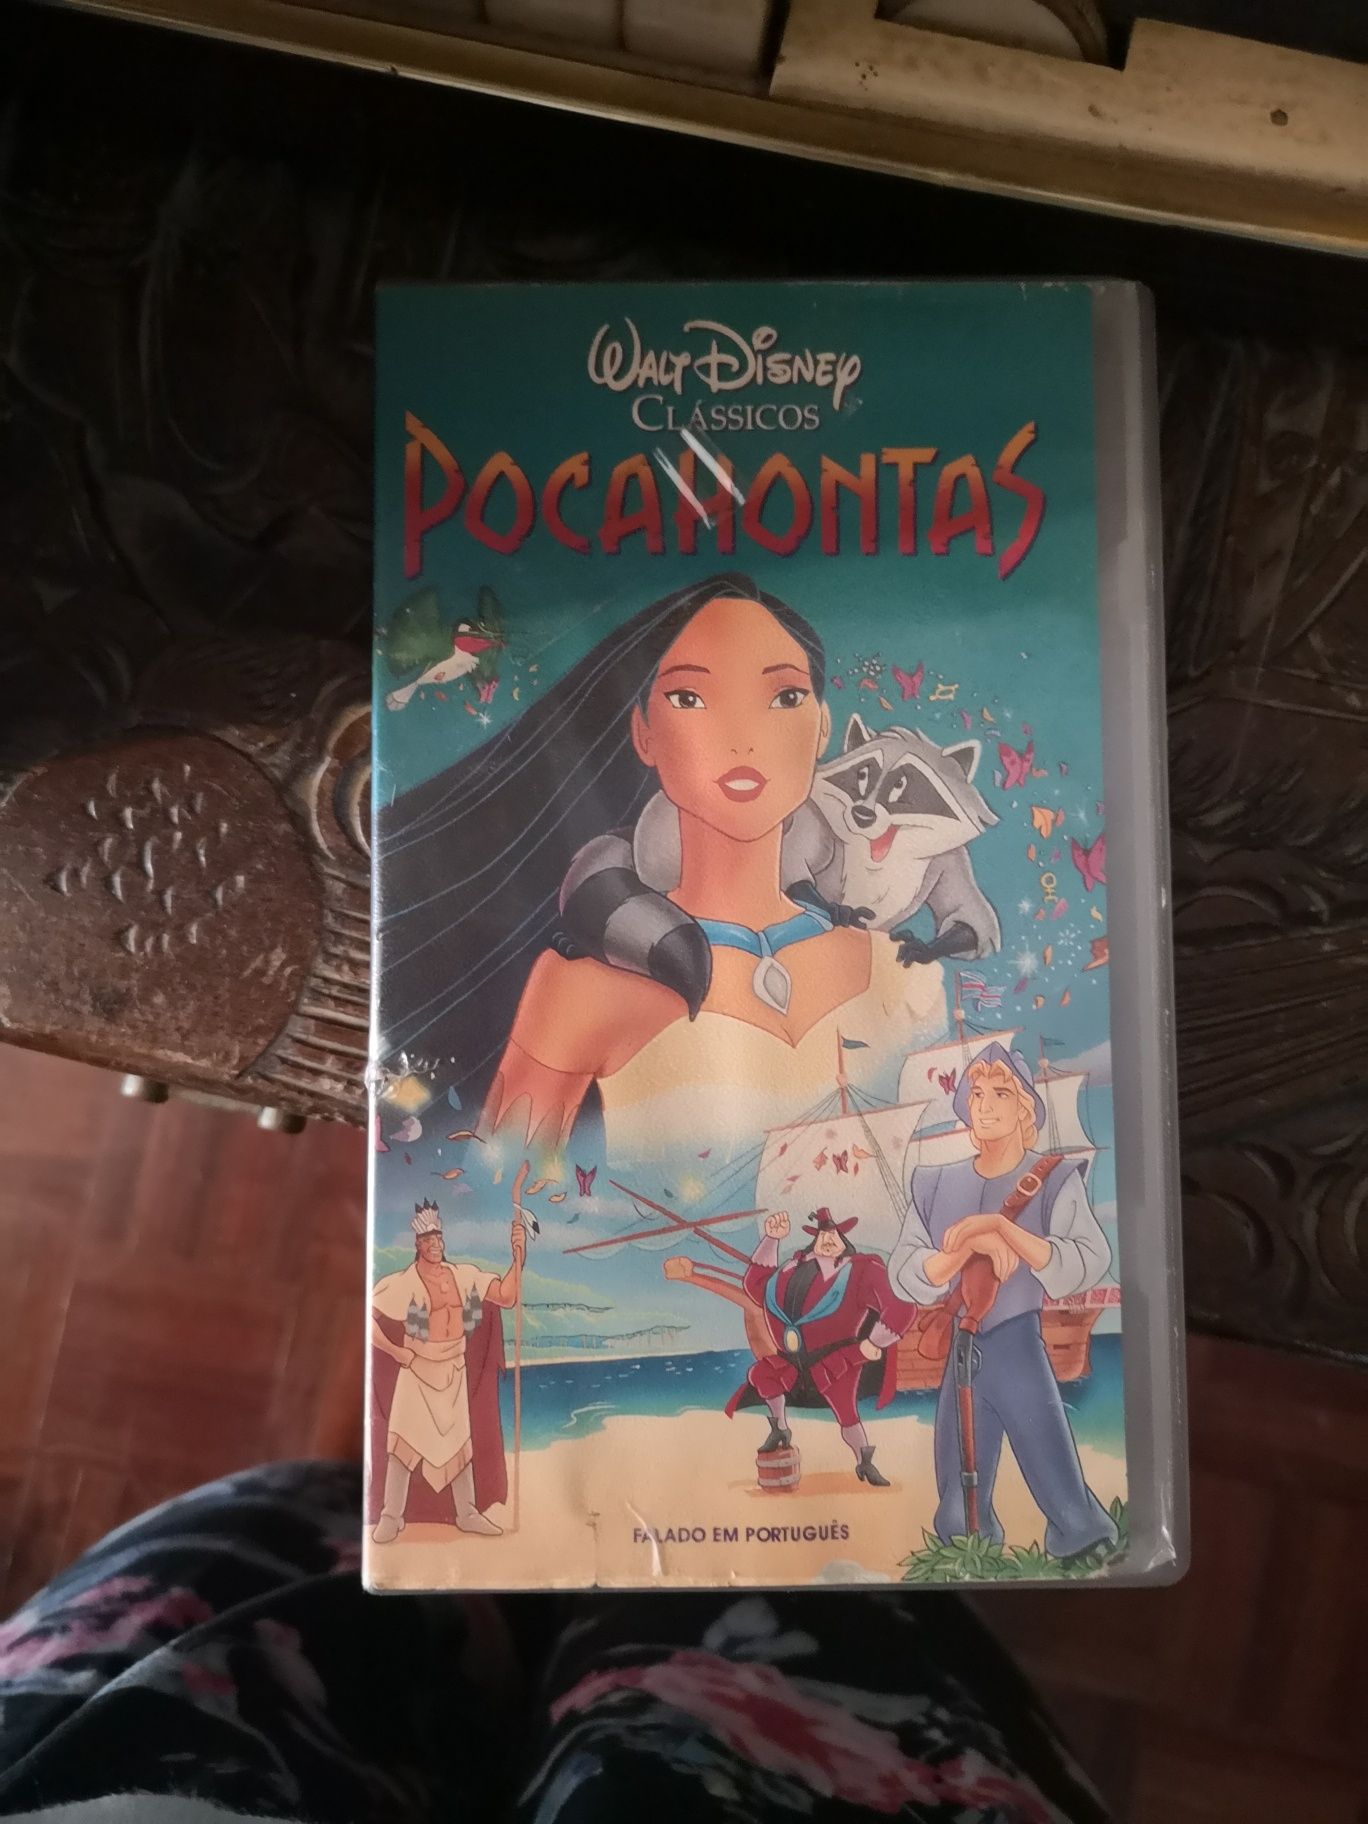 Vendo VHS de filmes variados